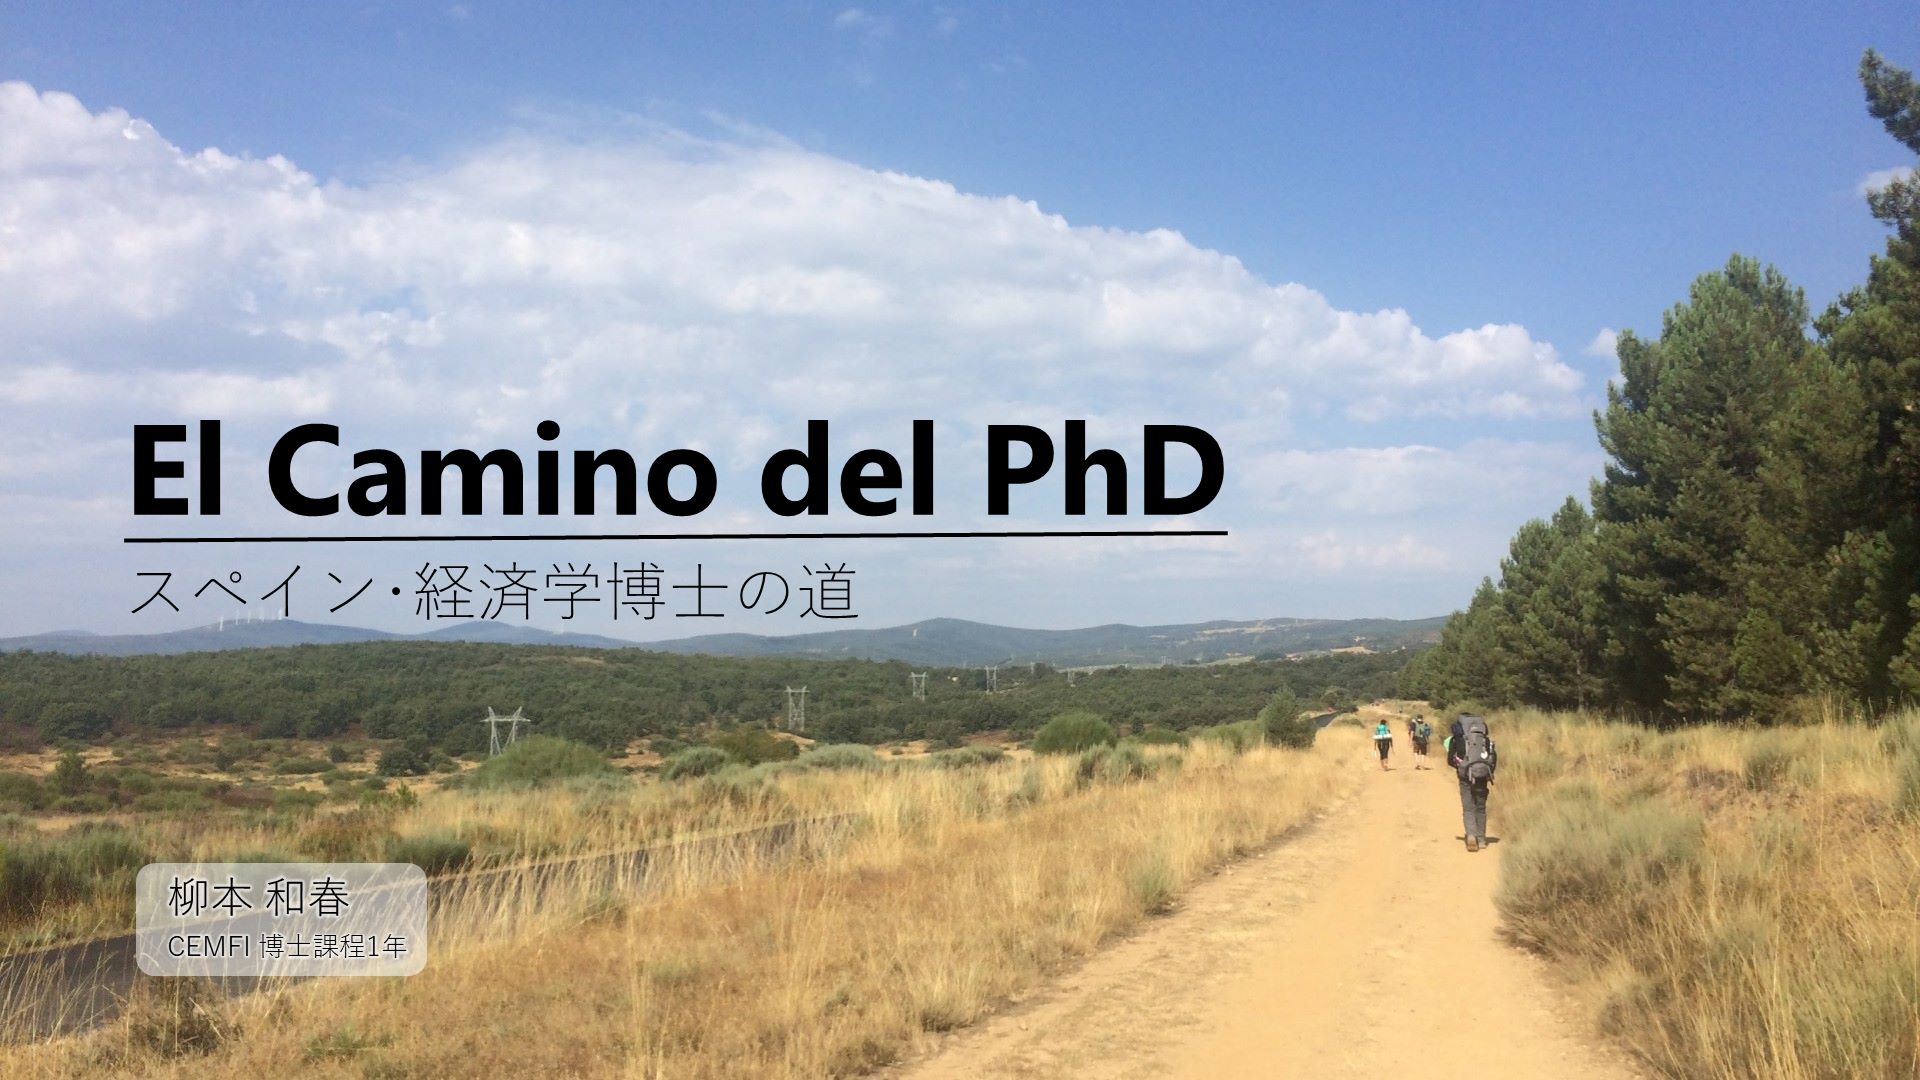 El Camino del PhD